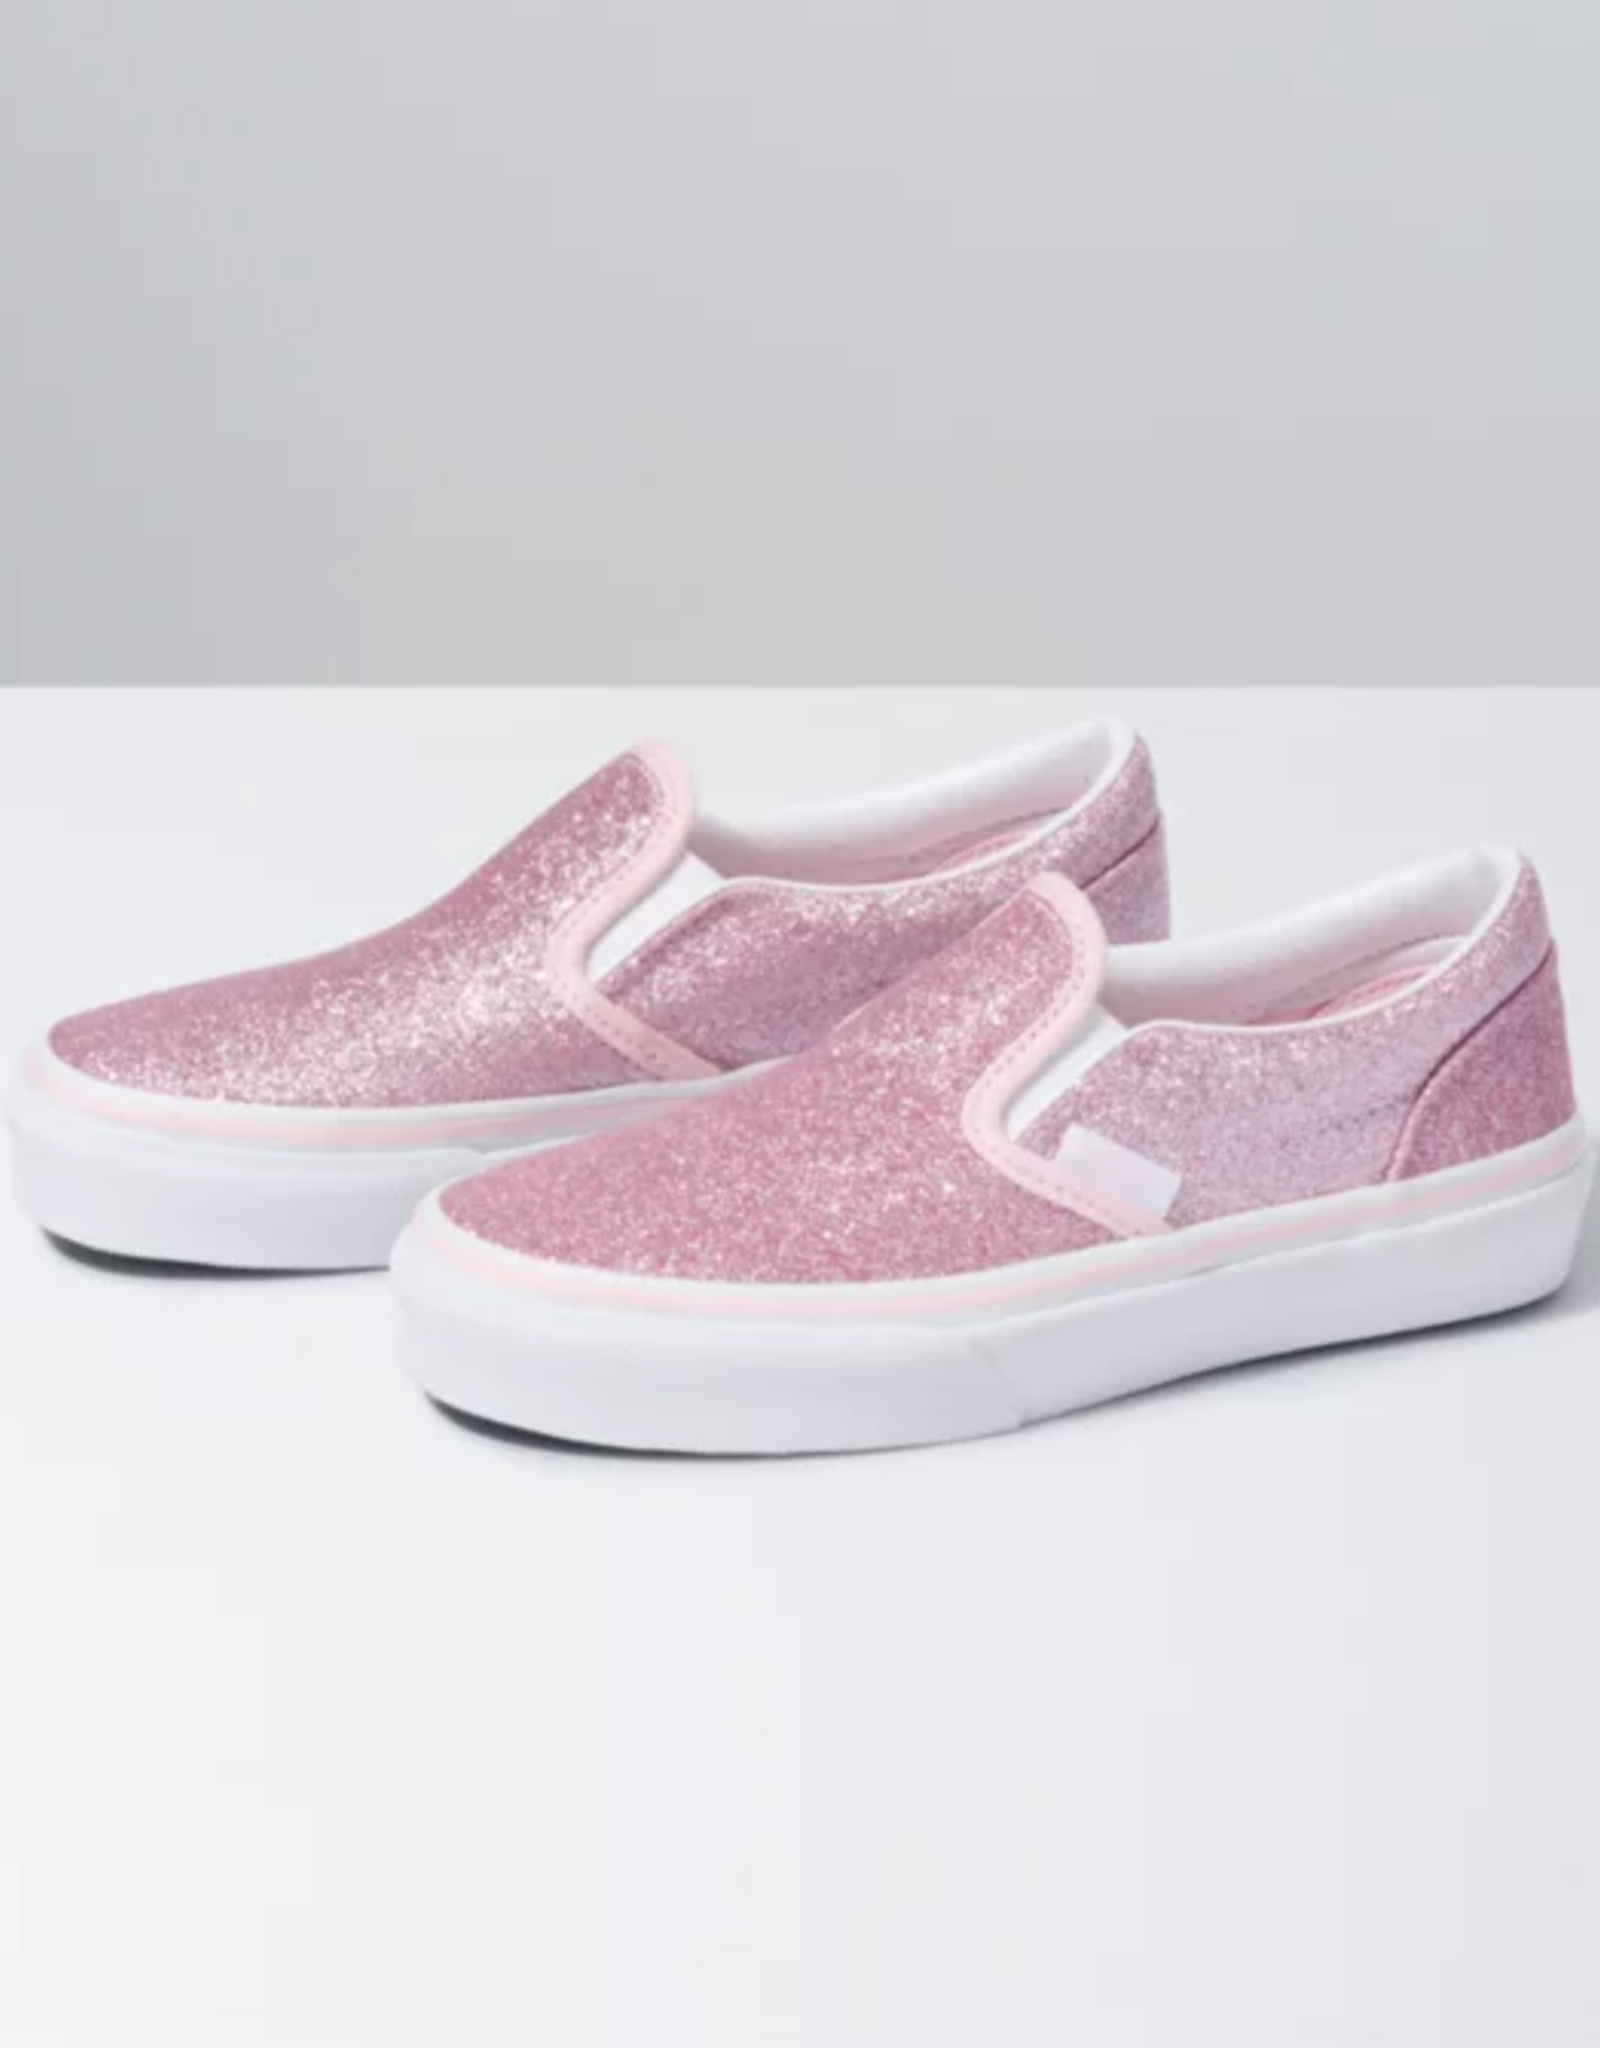 Vans Kids Slip-On Pink Glitter - Monkey 